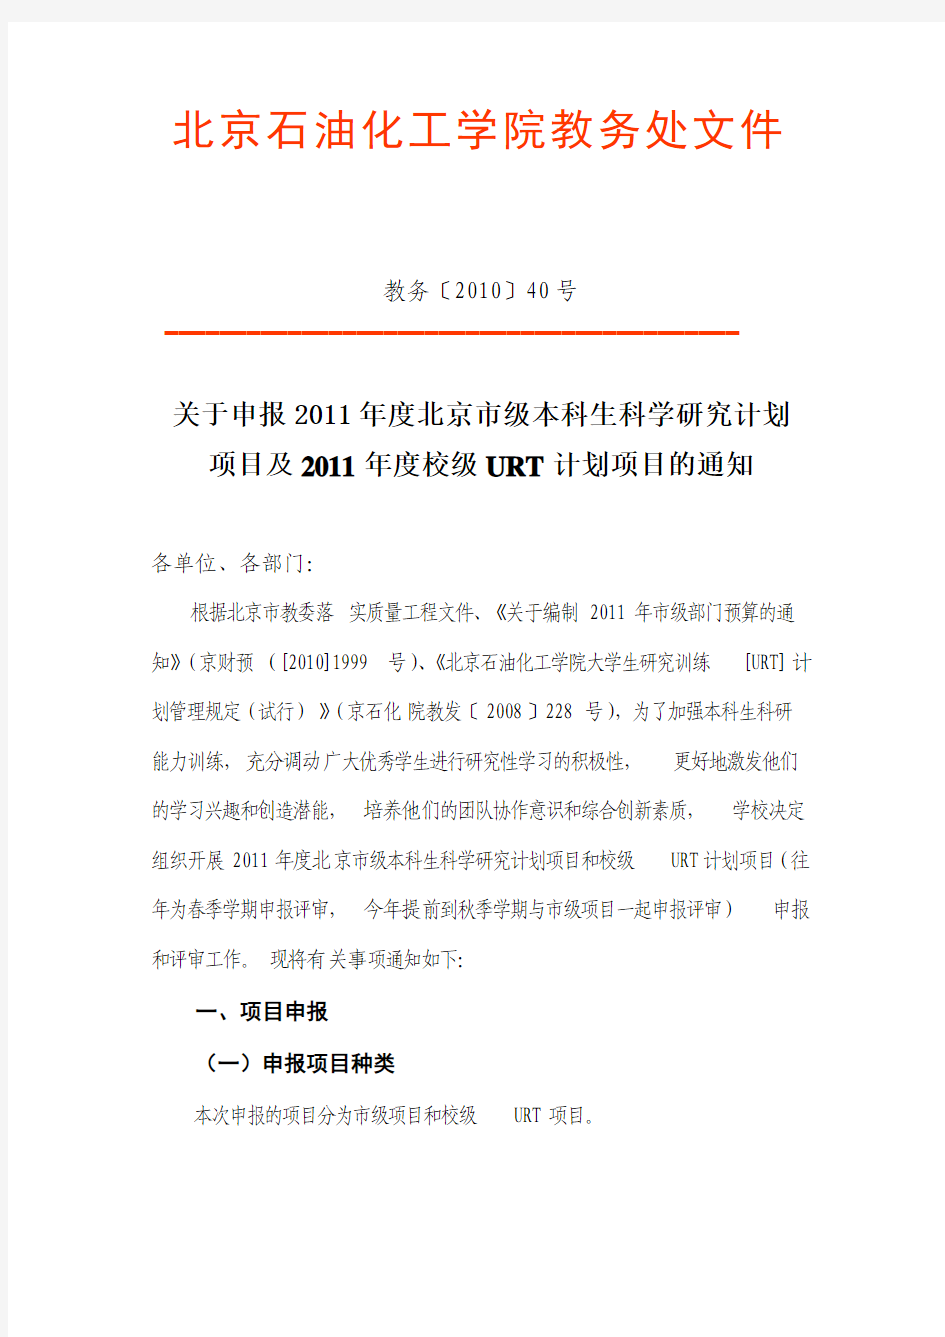 关于申报2011年度北京市级本科生科学研究计划项目及2011年度校级URT计划项目的通知